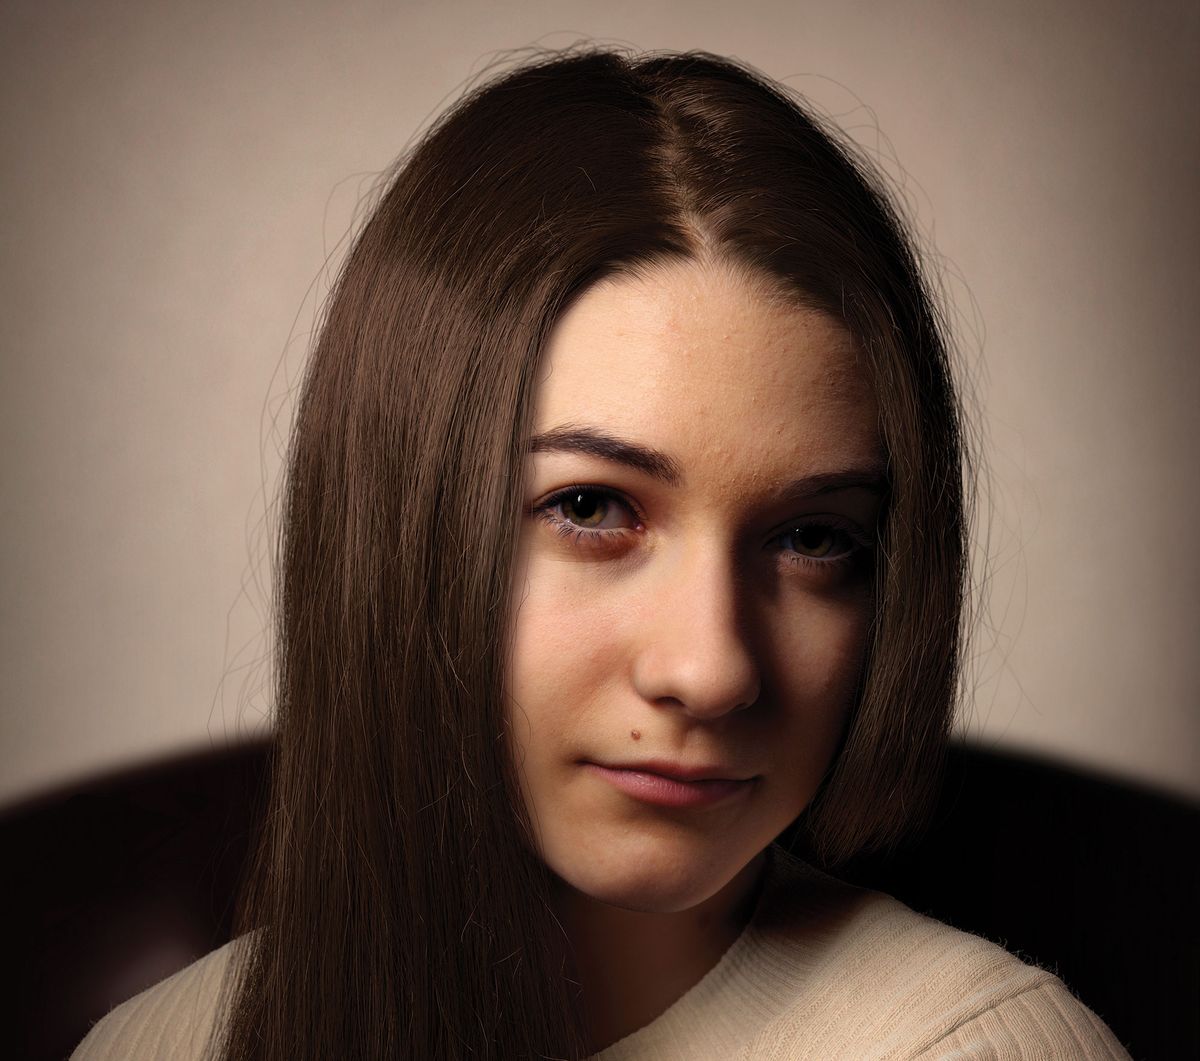 Реалистични 3D портрети: жена от Иън Спригс